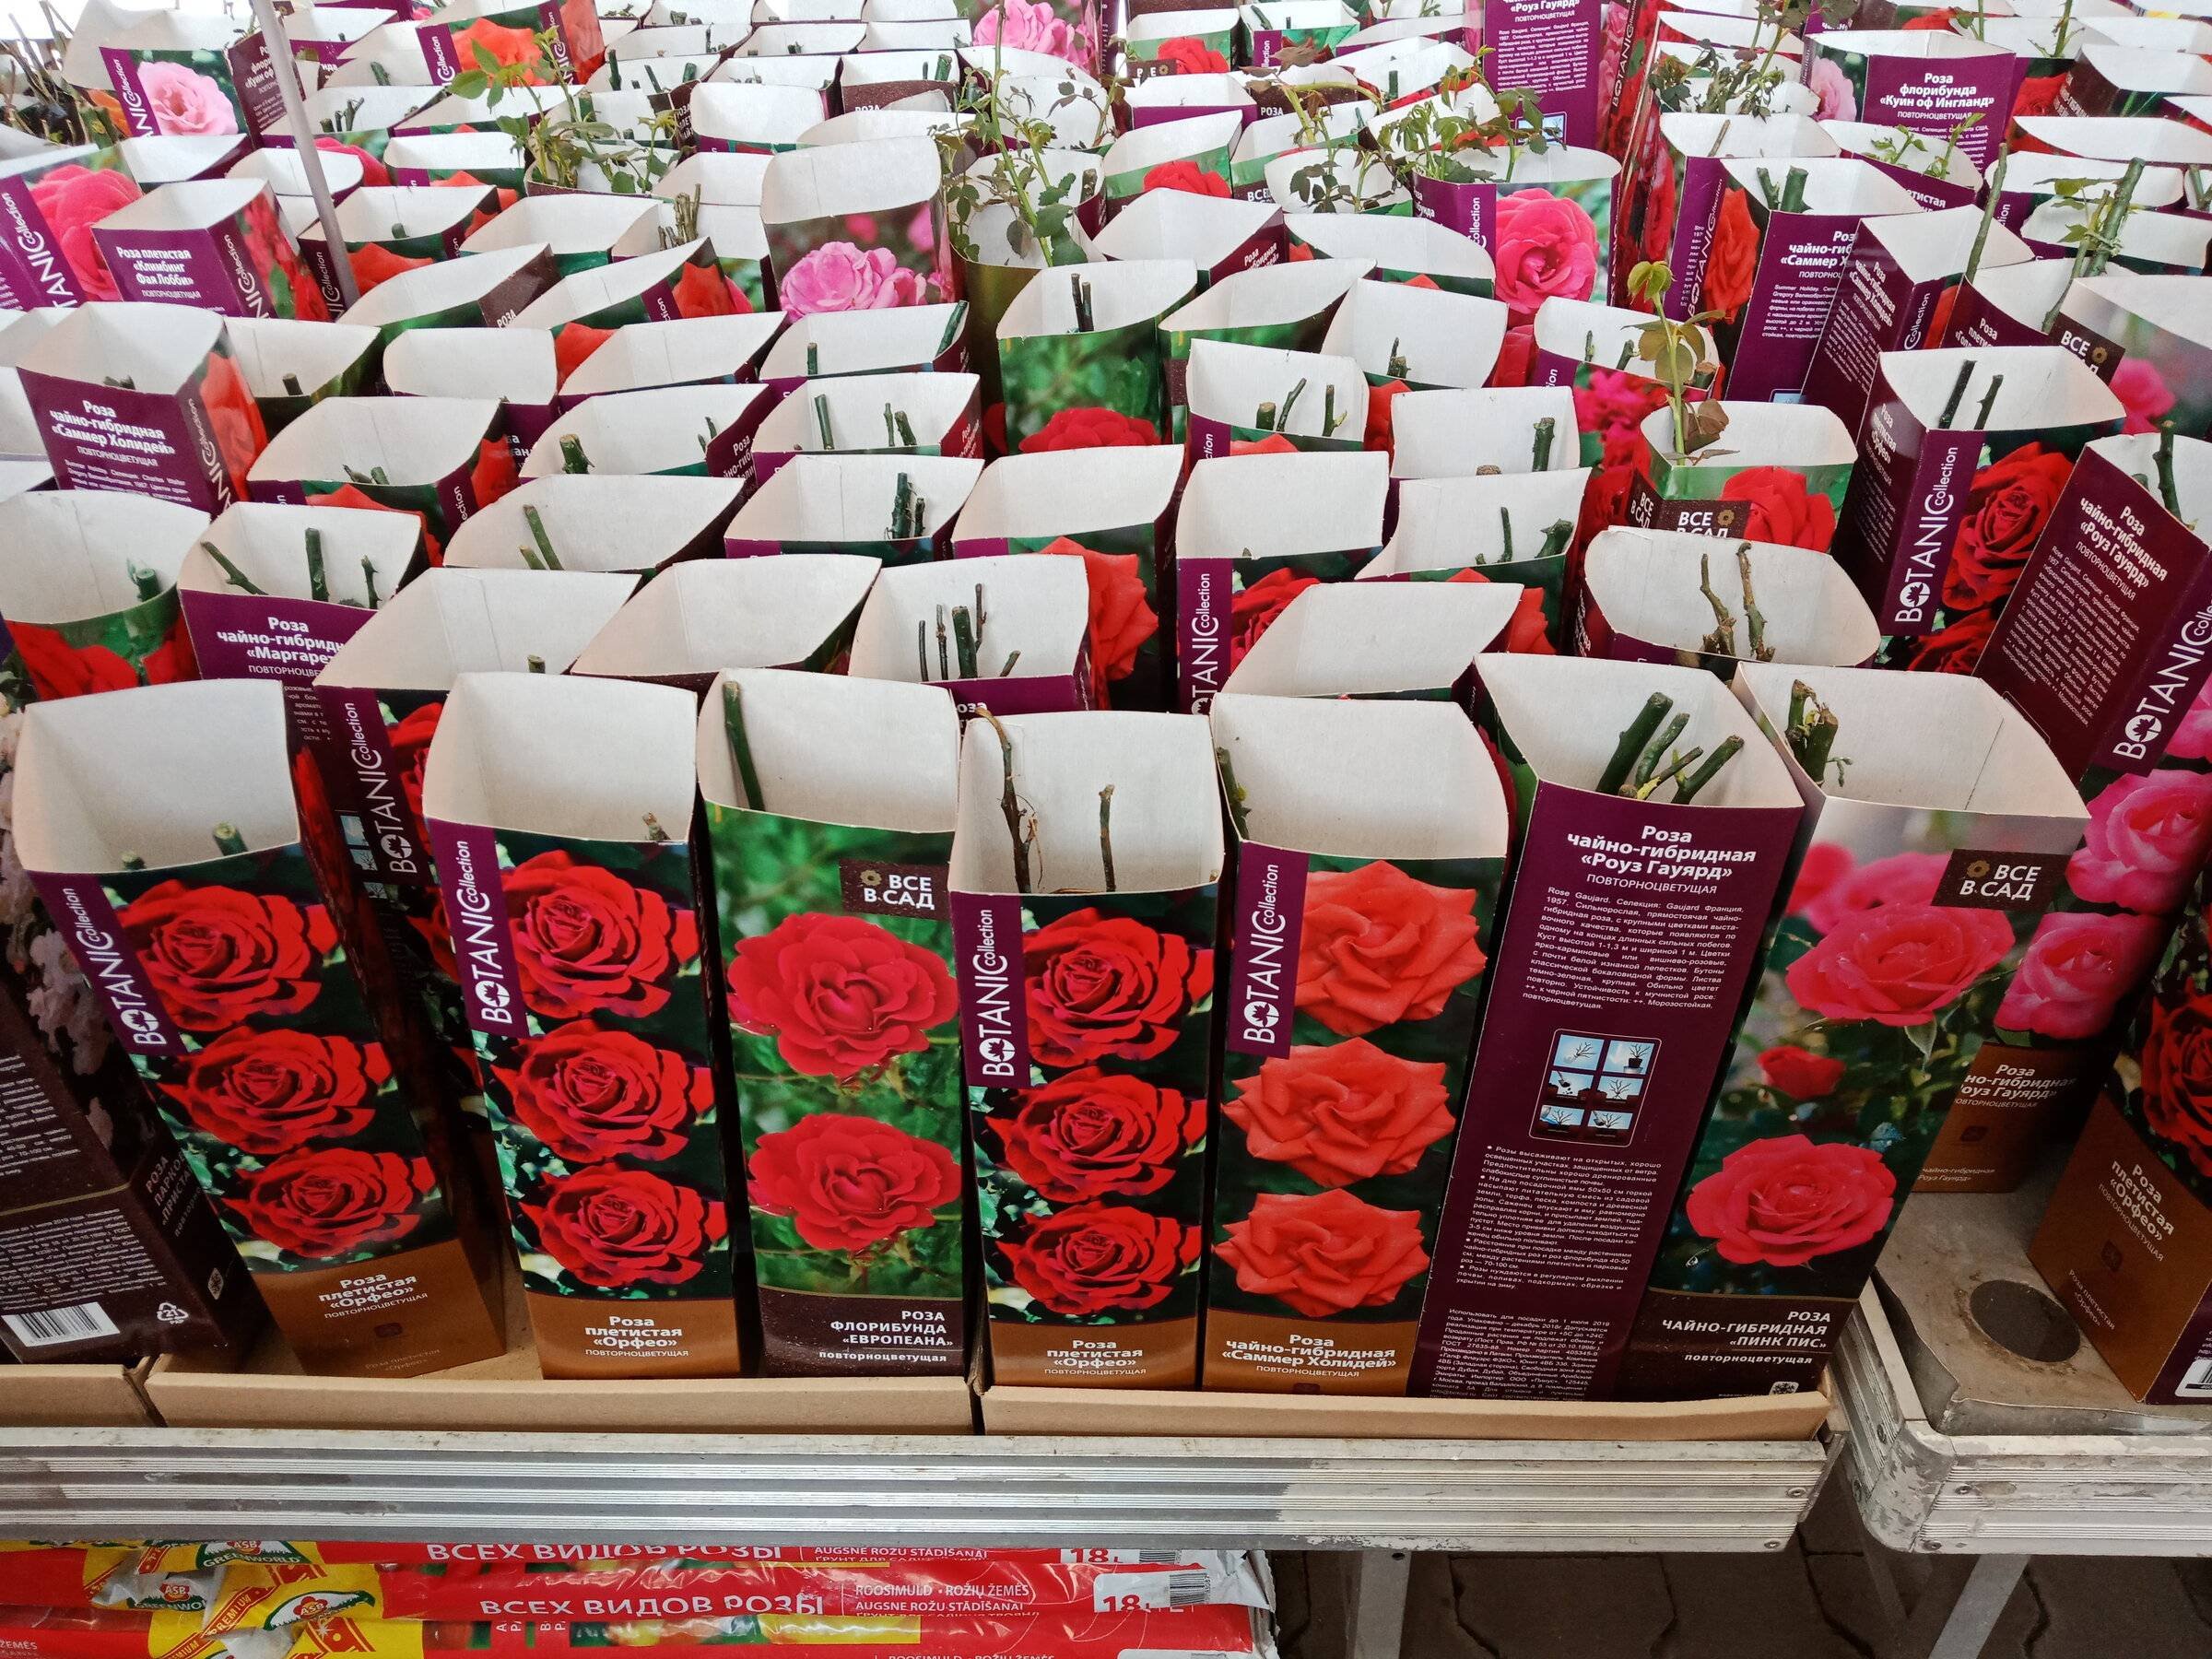 Поиск саженцы роз. Саженцы роз в коробках. Рассада роз. Саженцы роз в Ашане. Сажгняы роз в коробочках в магазине.